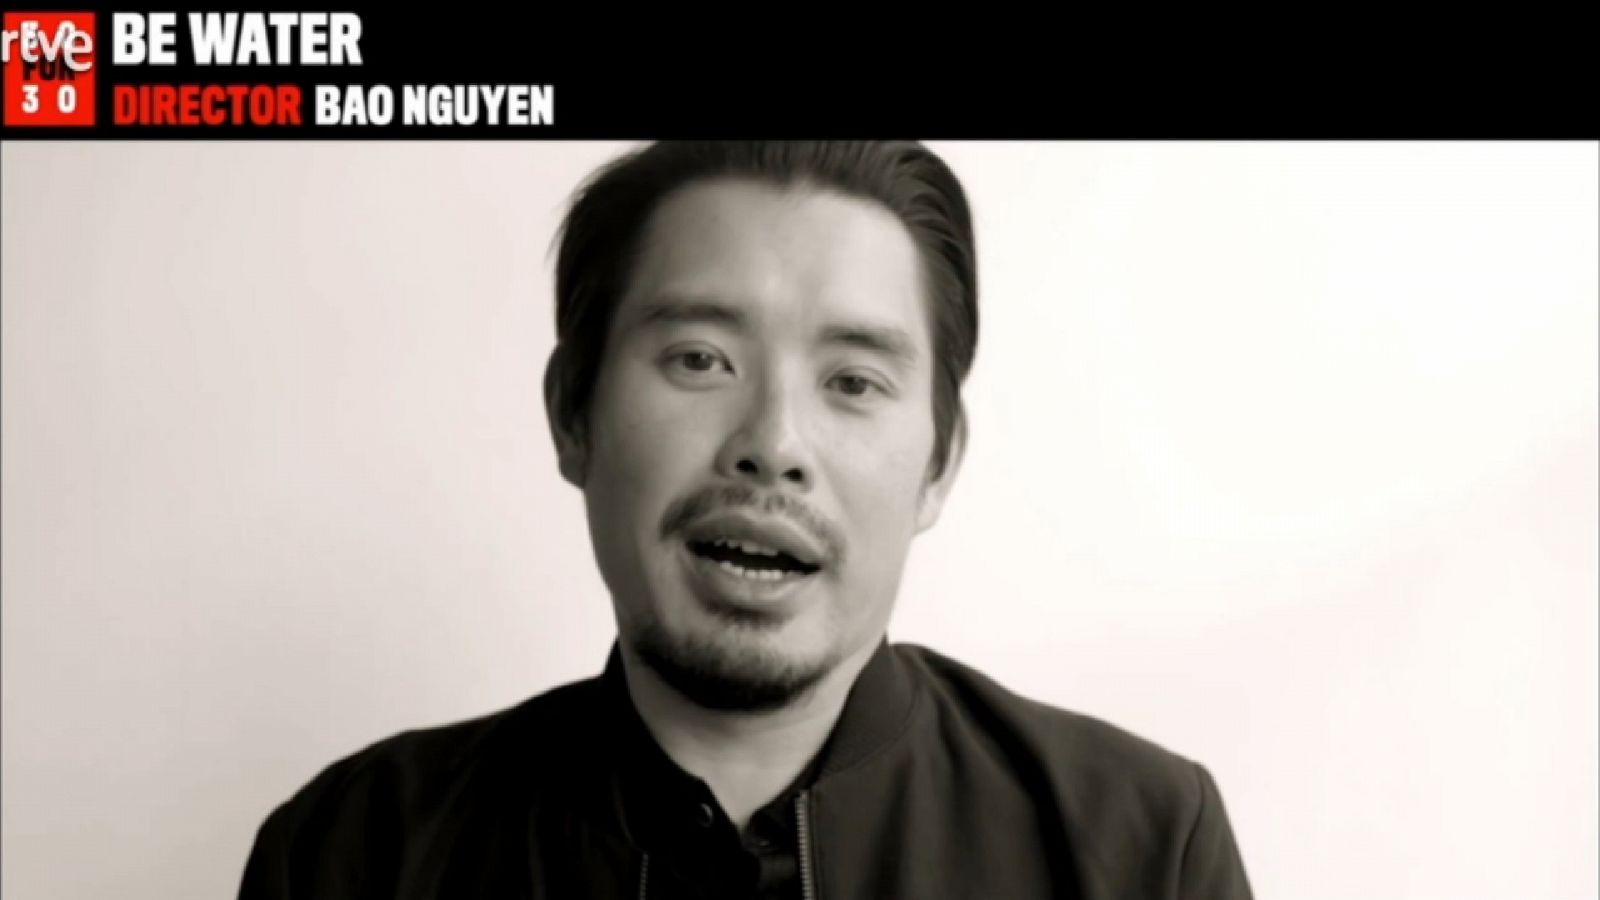 El director de 'Be water' Bao Nguyen explica porque le cautivó la personalidad de Bruce Lee - avance